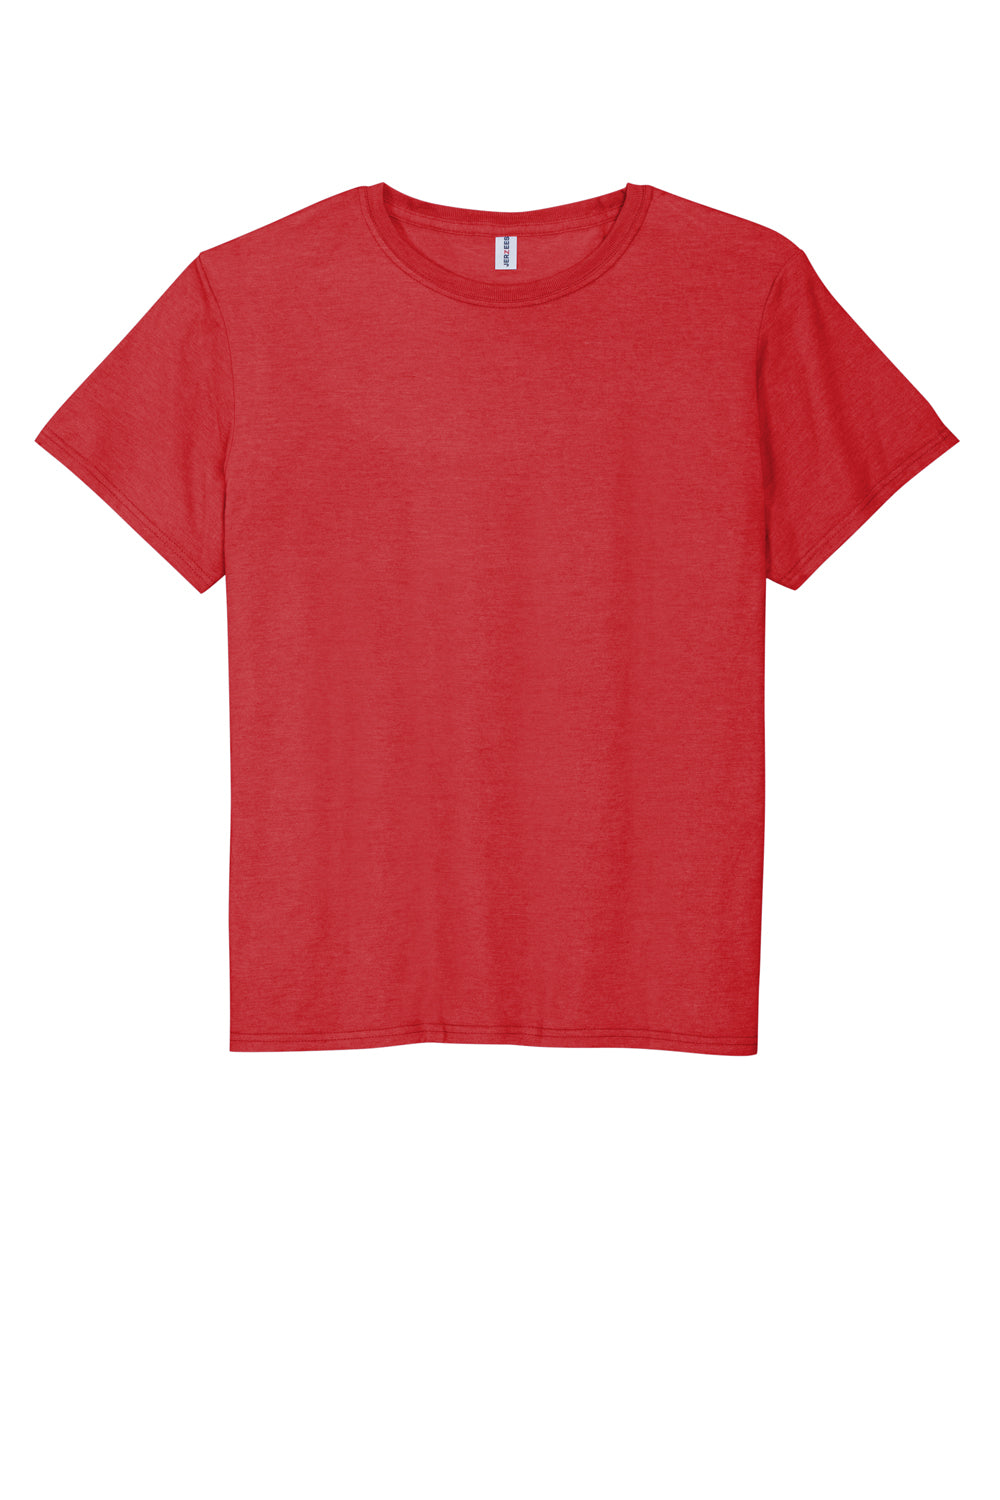 Jerzees 560M Mens Premium Blend Ring Spun Short Sleeve Crewneck T-Shirt True Red Flat Front